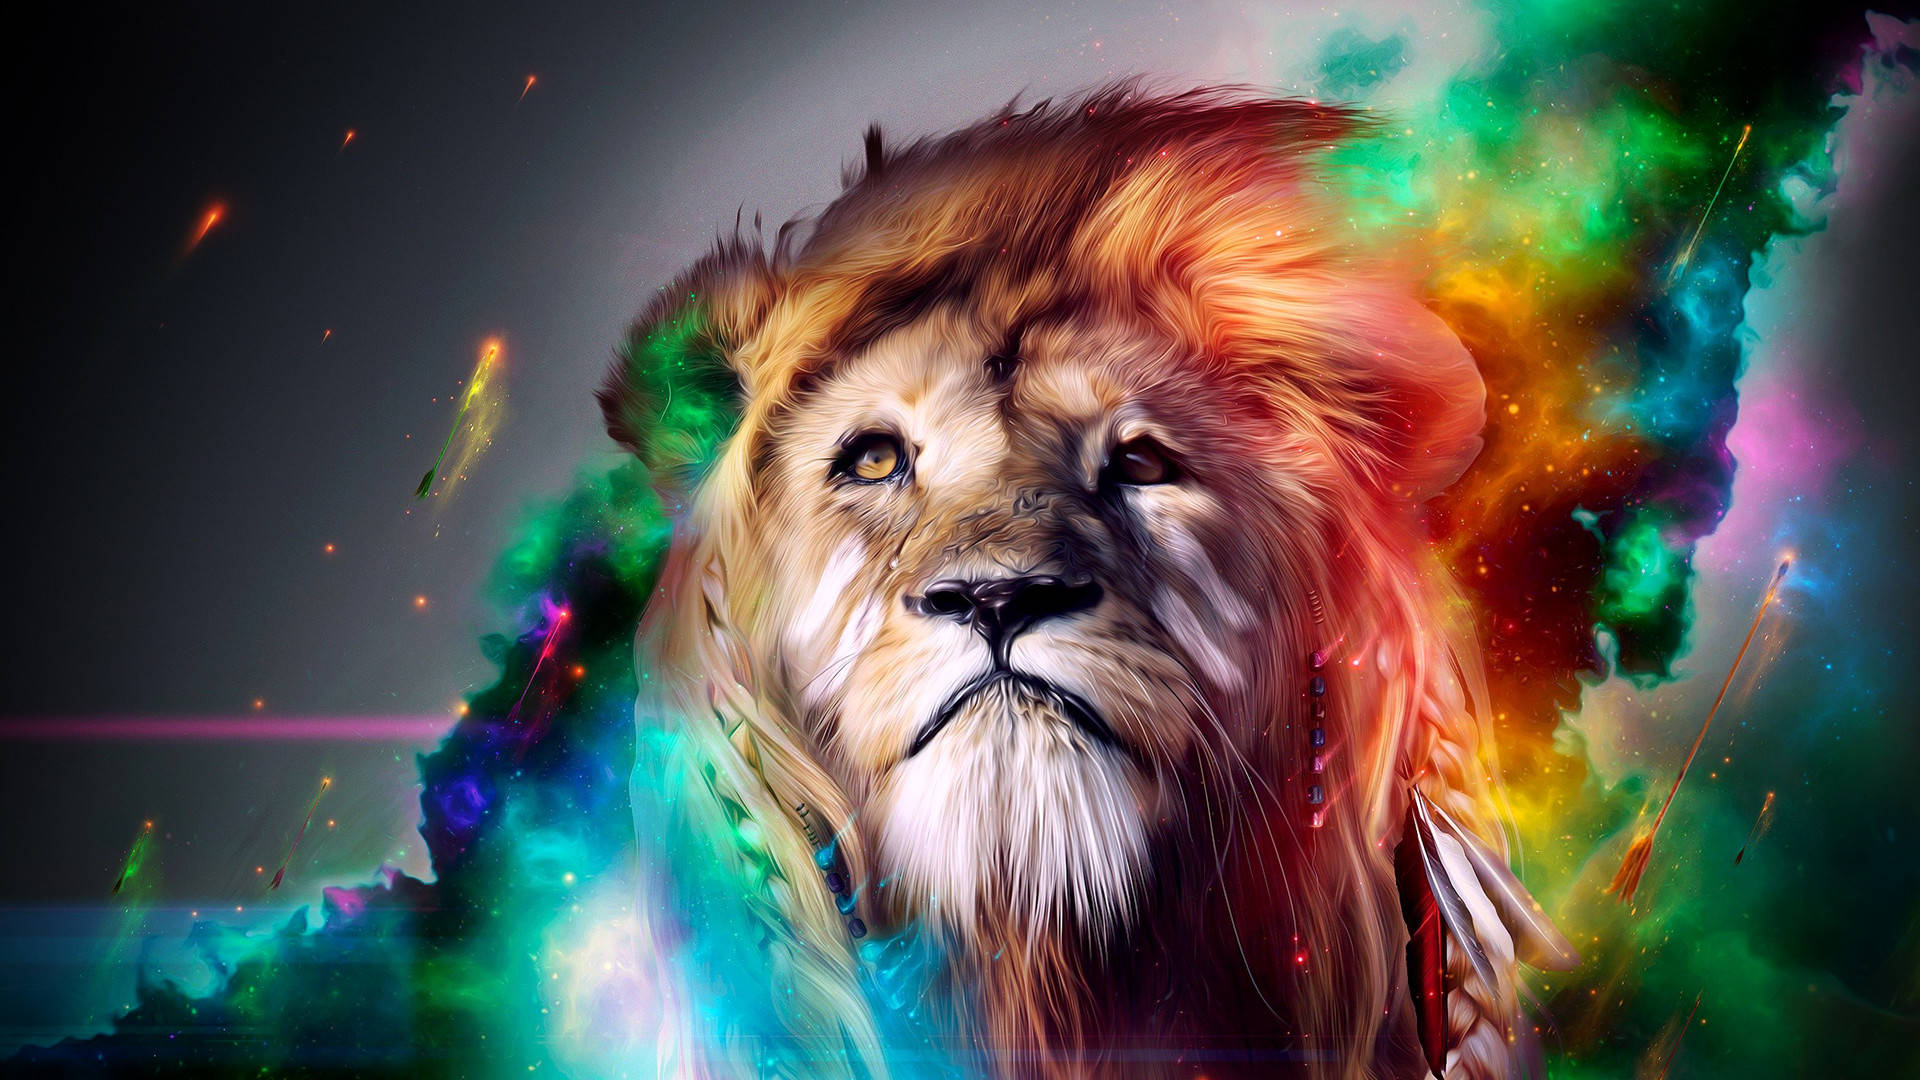 Cool Lion Art 1080p Hd Desktop